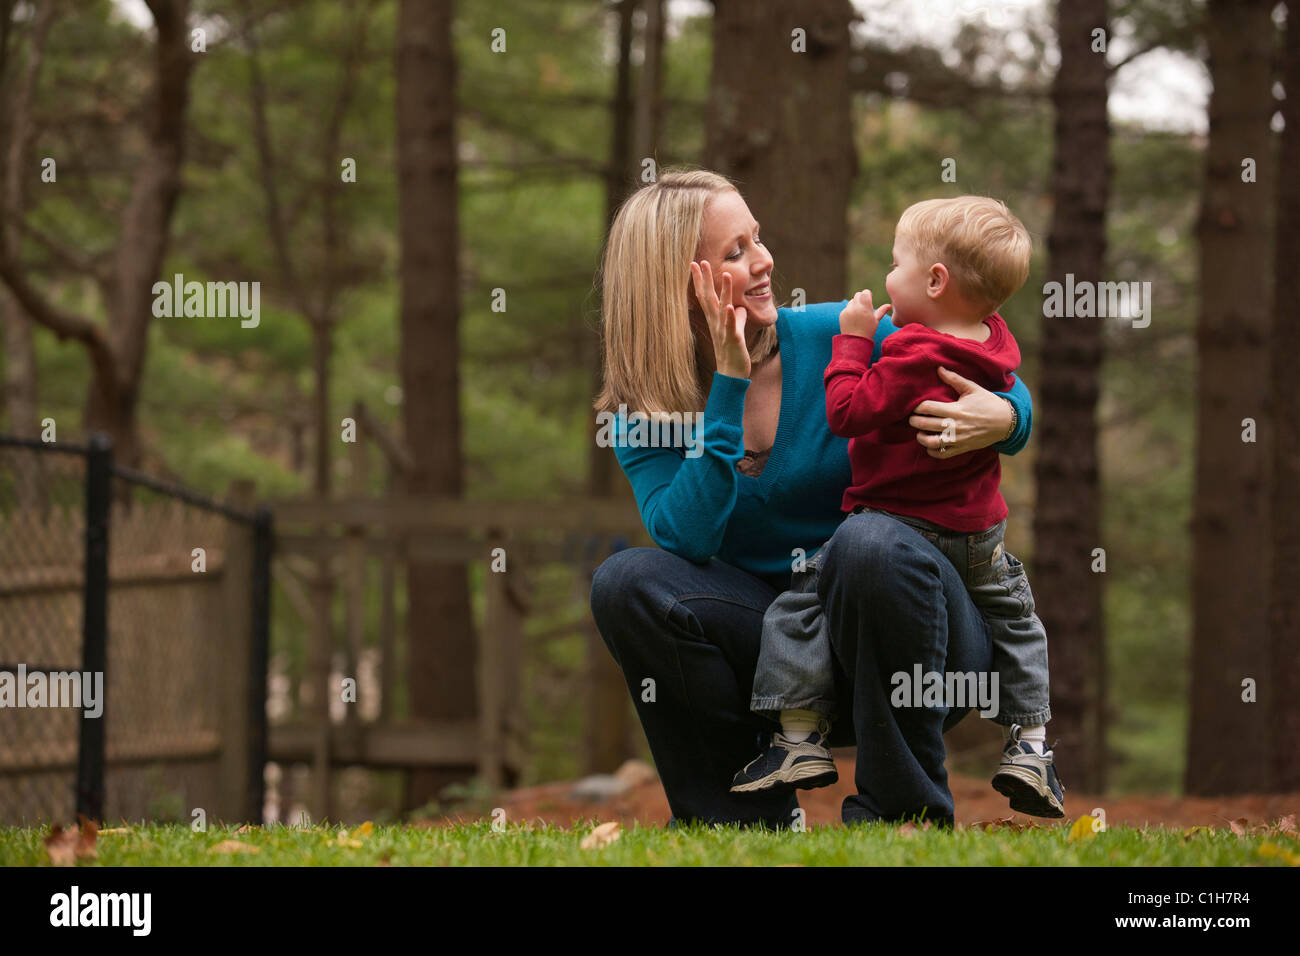 La signature de la femme mot "maman" dans la langue des signes américaine lors de la communication avec son fils Banque D'Images